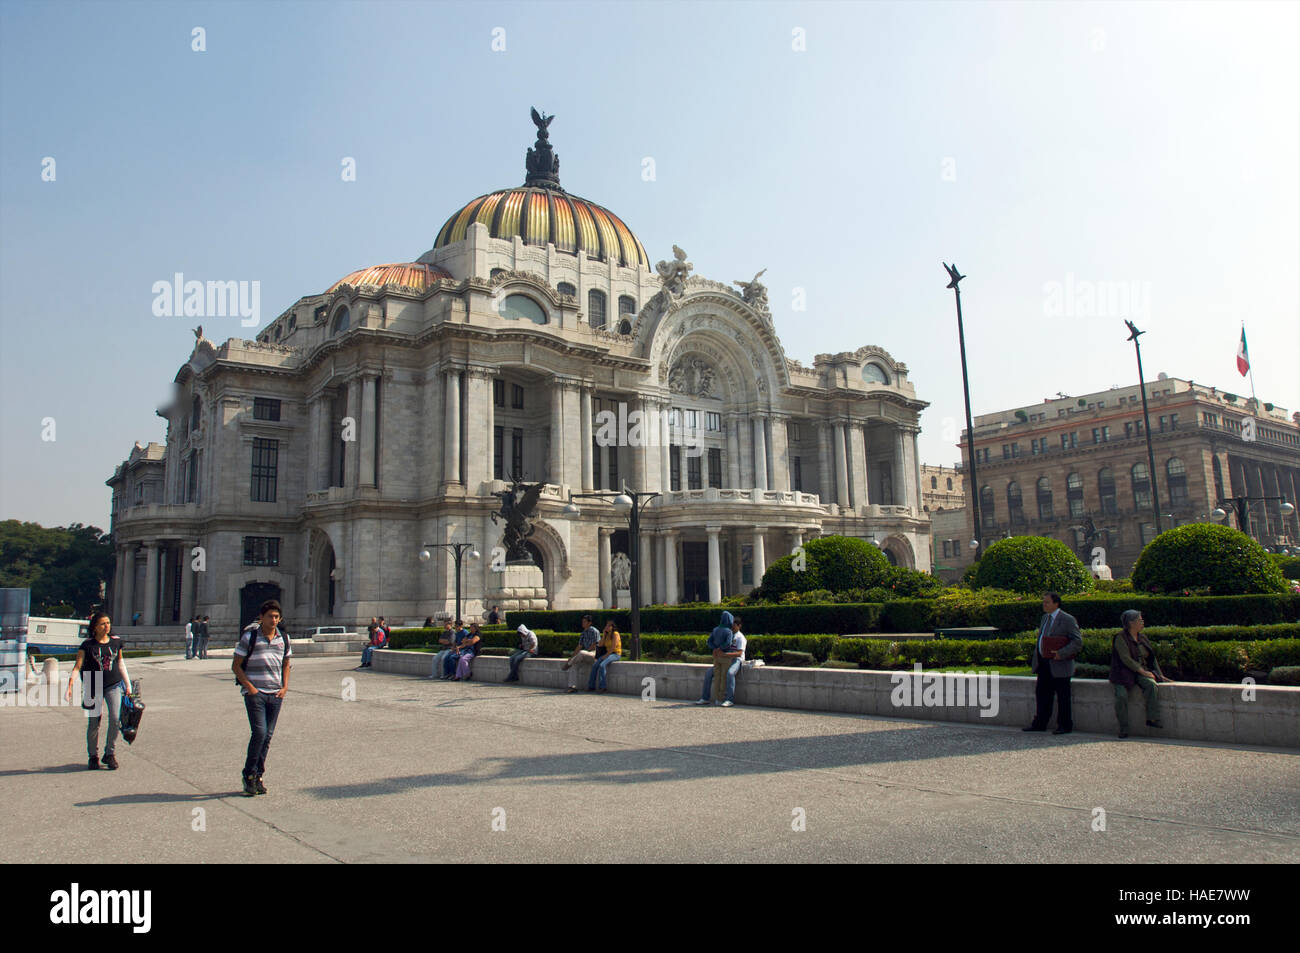 Front view of Palacio de Bellas Artes in Mexico City, Mexico Stock Photo